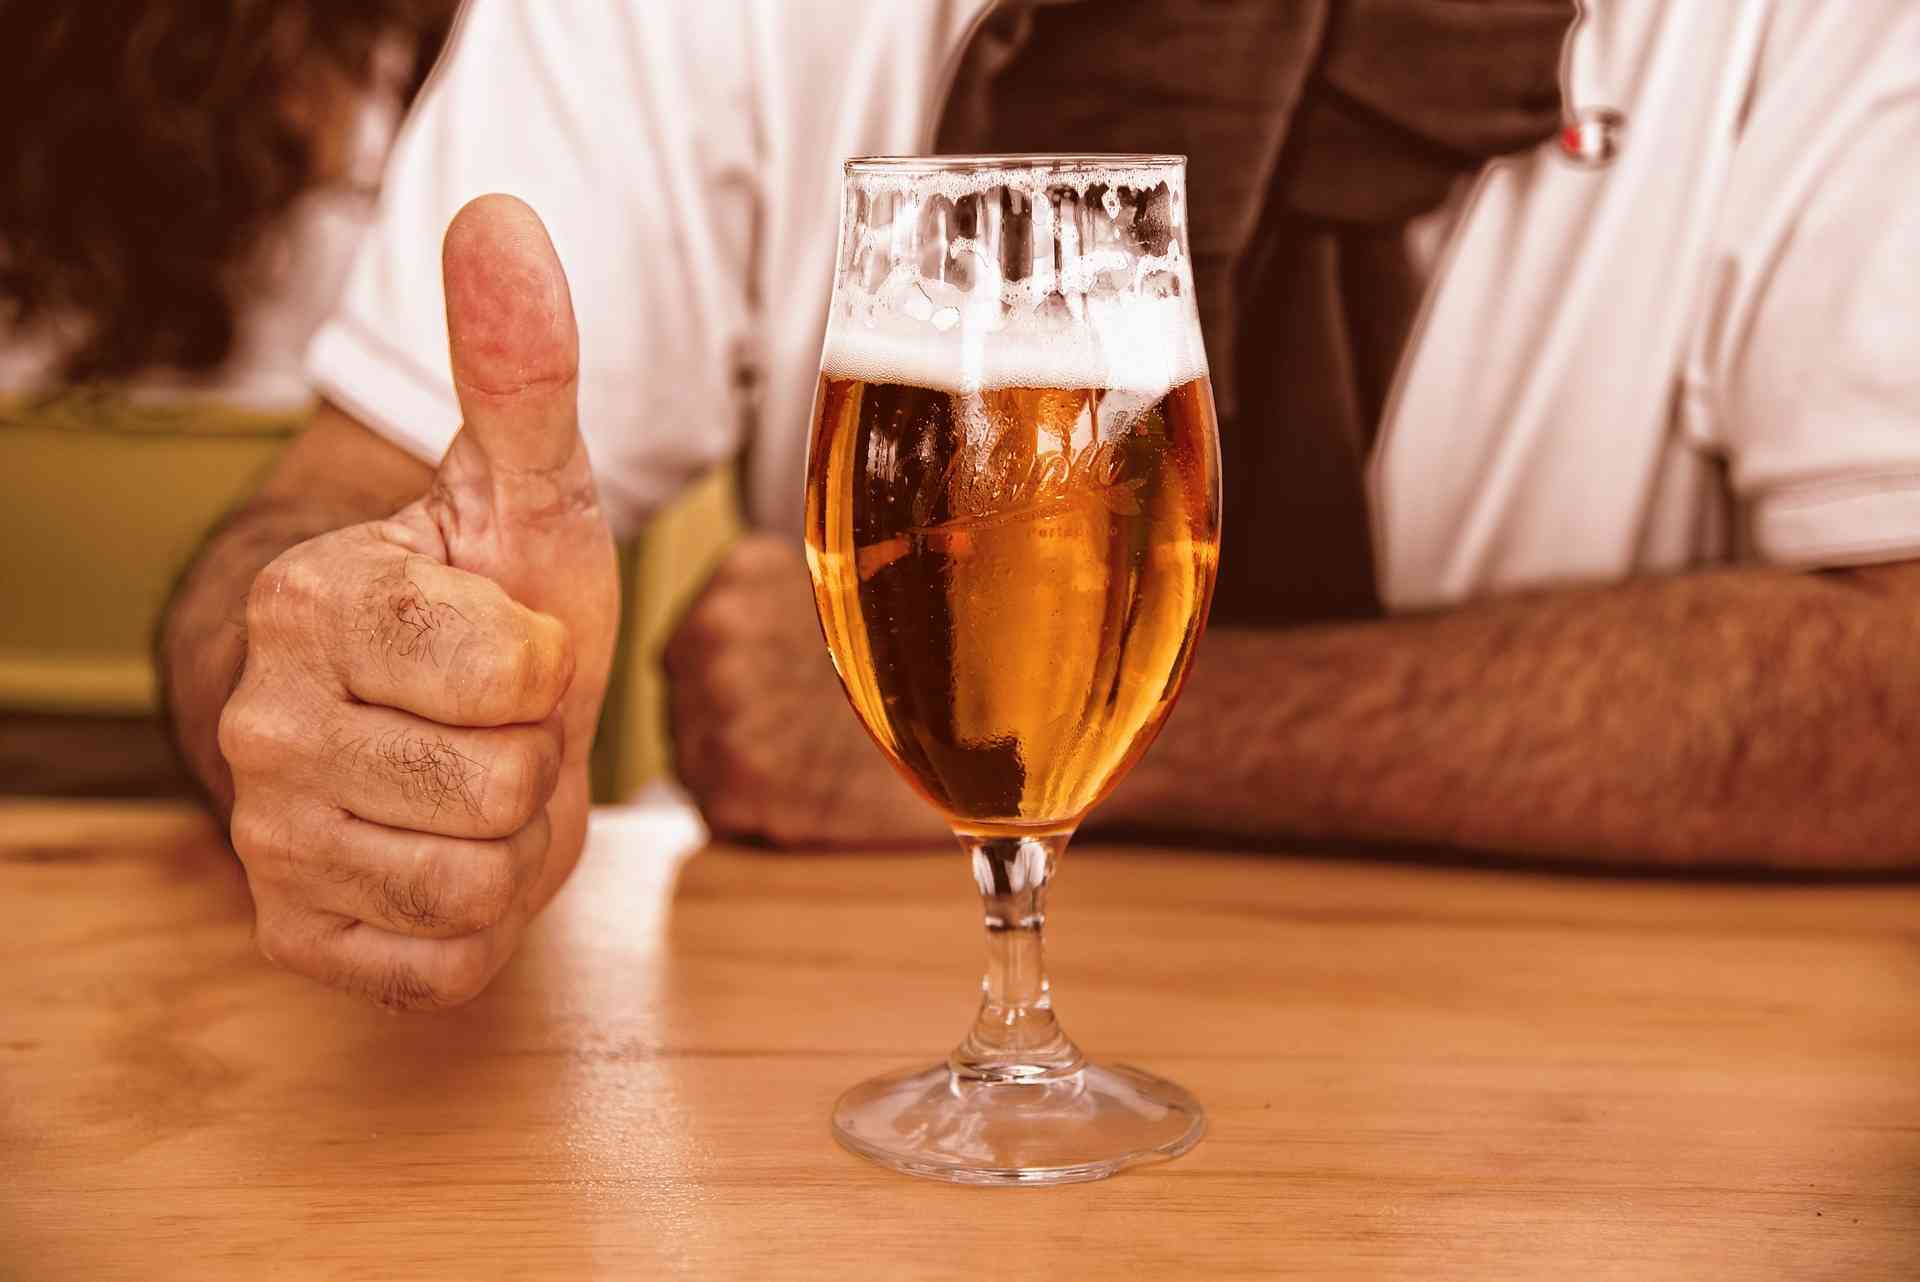 EVO IZ KOJIH RAZLOGA: Svakodnevna konzumacija piva nije preporučljiva